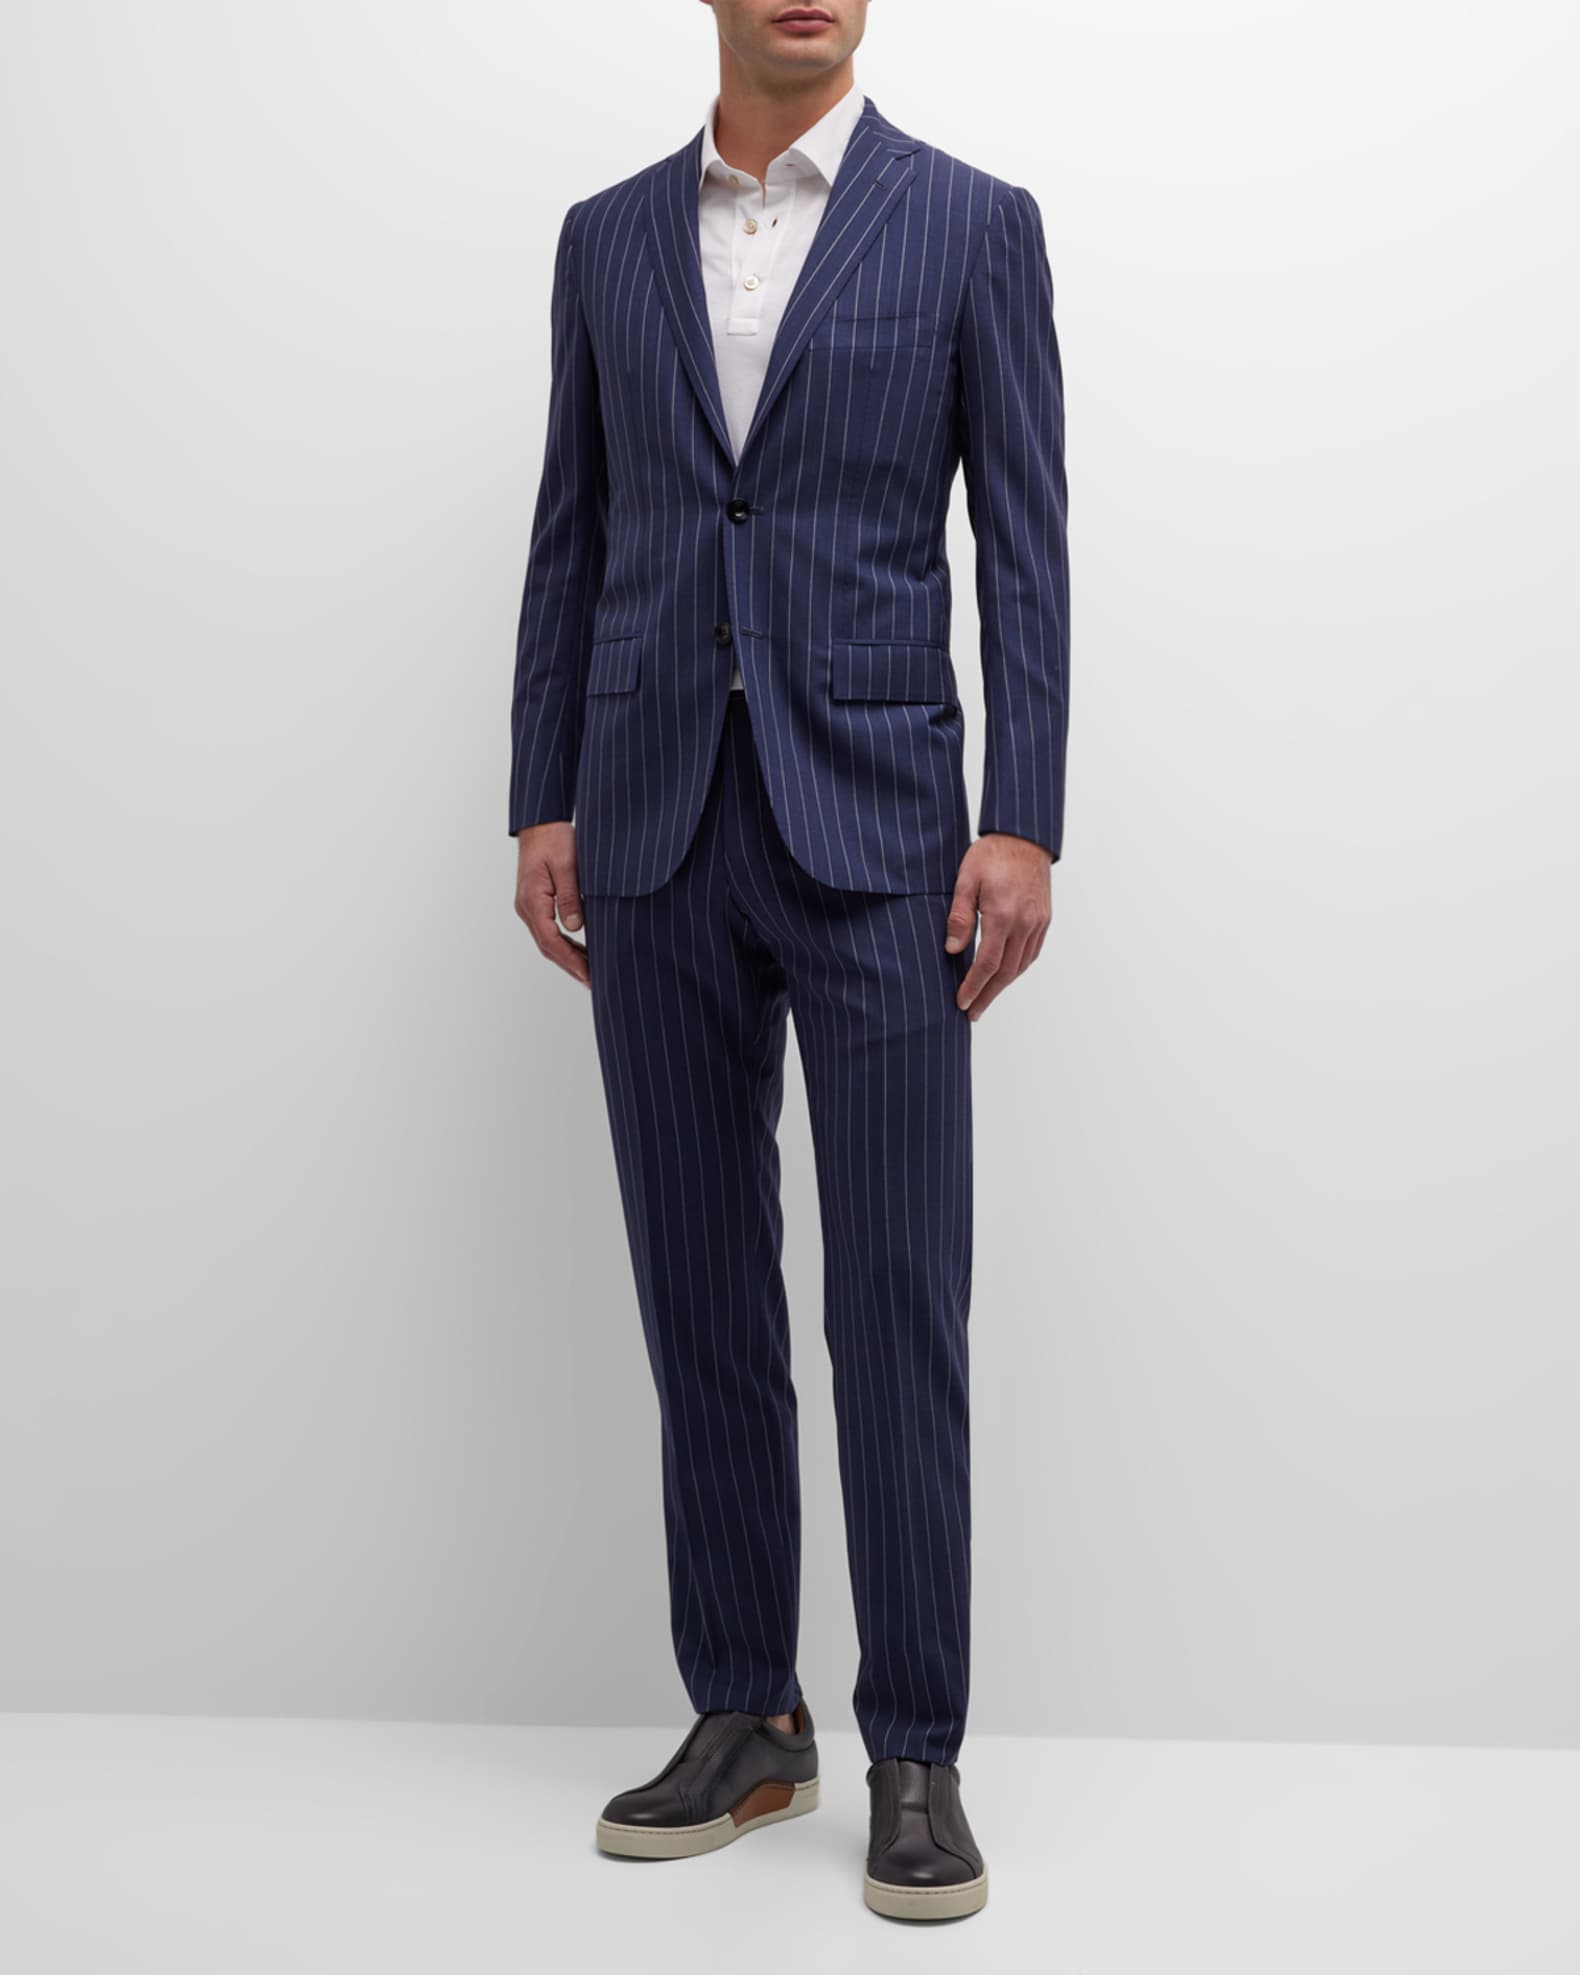 Louis Vuitton Men's Cashmere Suit